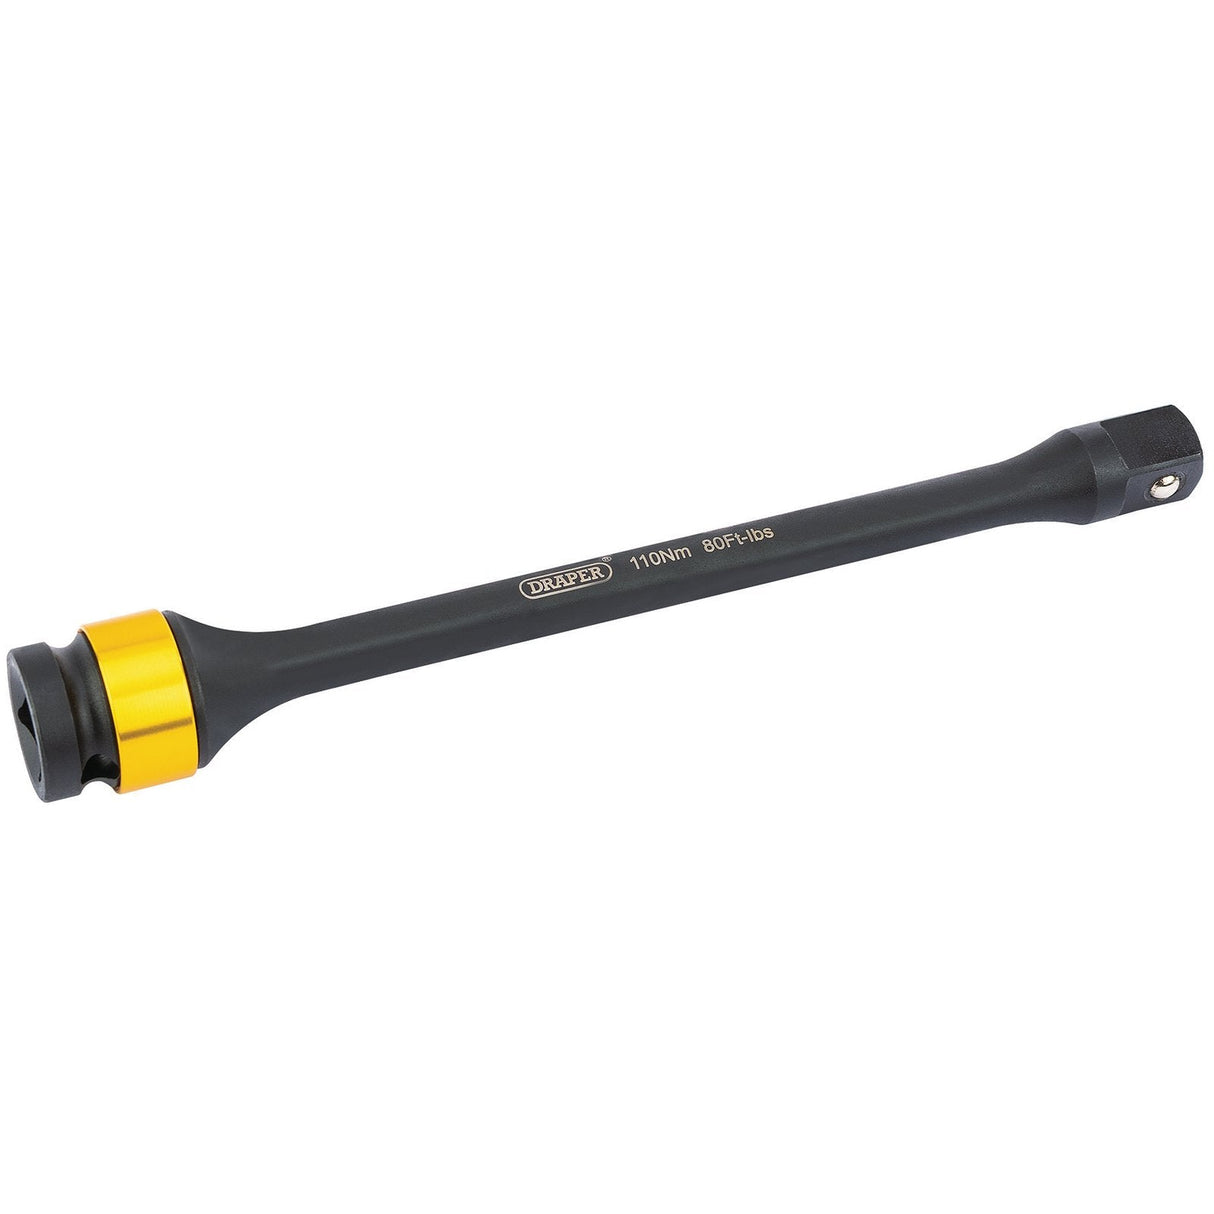 Draper Torque Stick, 1/2" Sq. Dr., 110Nm - TS110 - Farming Parts